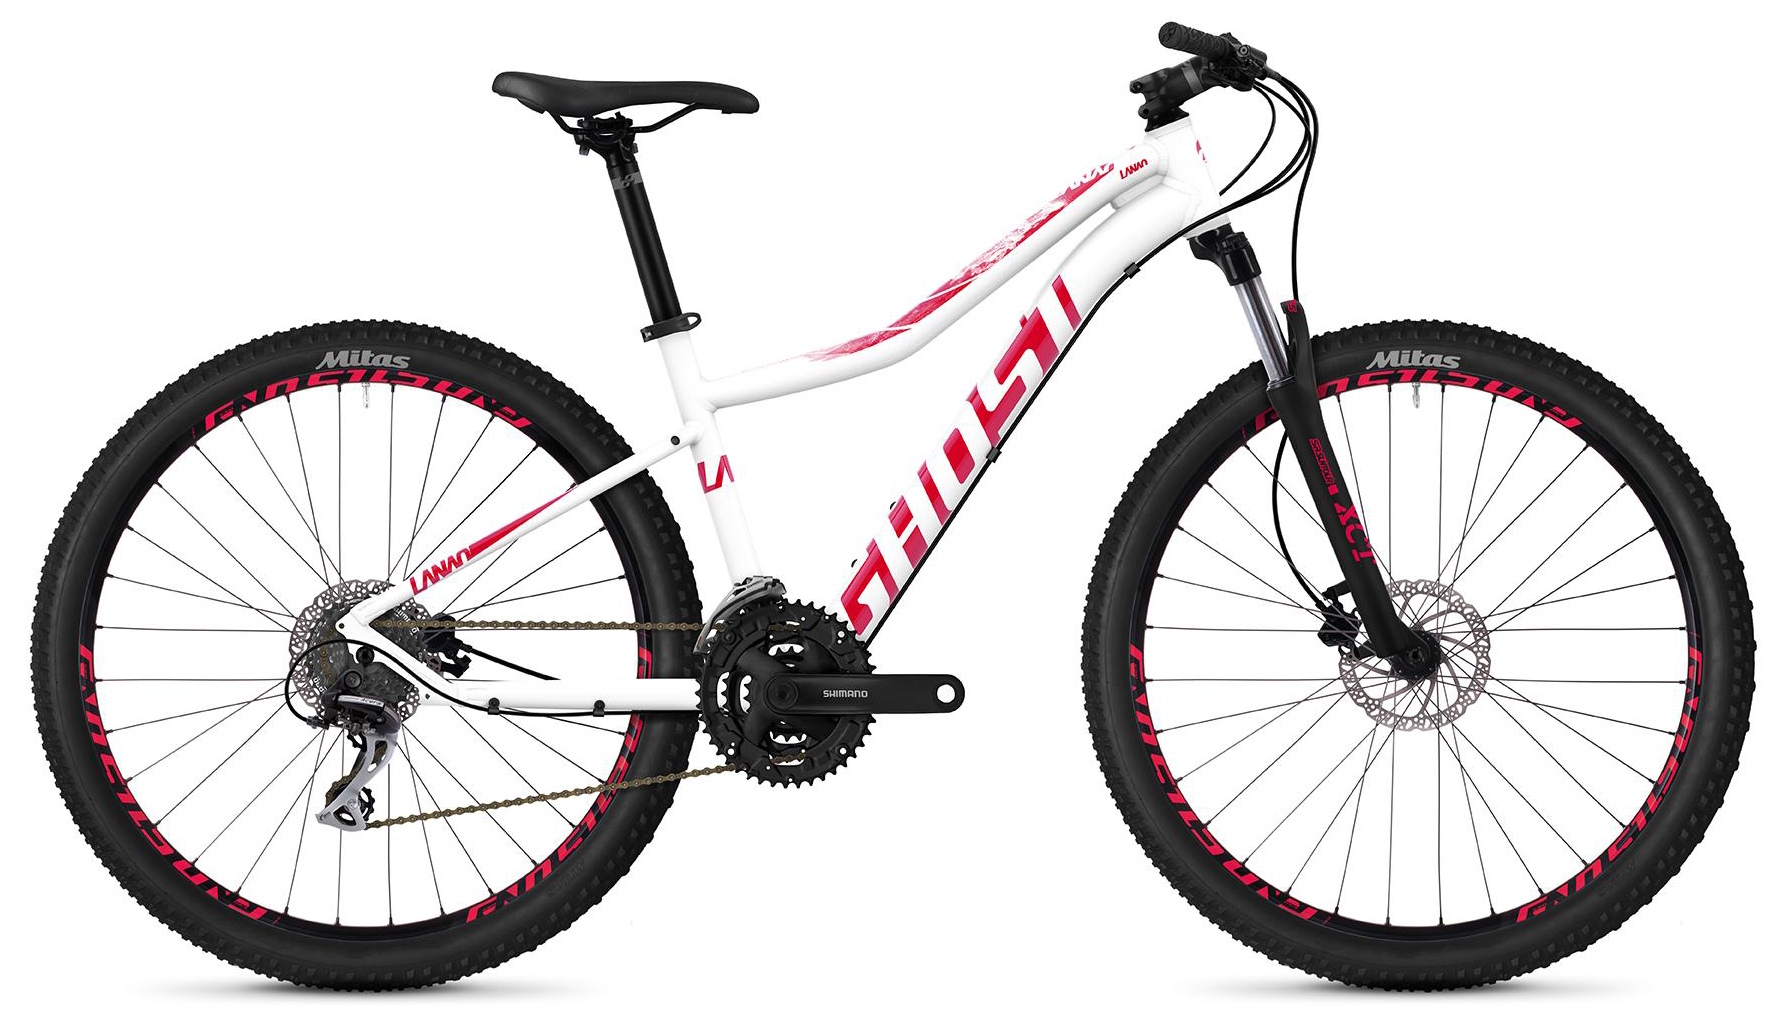  Отзывы о Женском велосипеде Ghost Lanao 2.7 AL W 2020